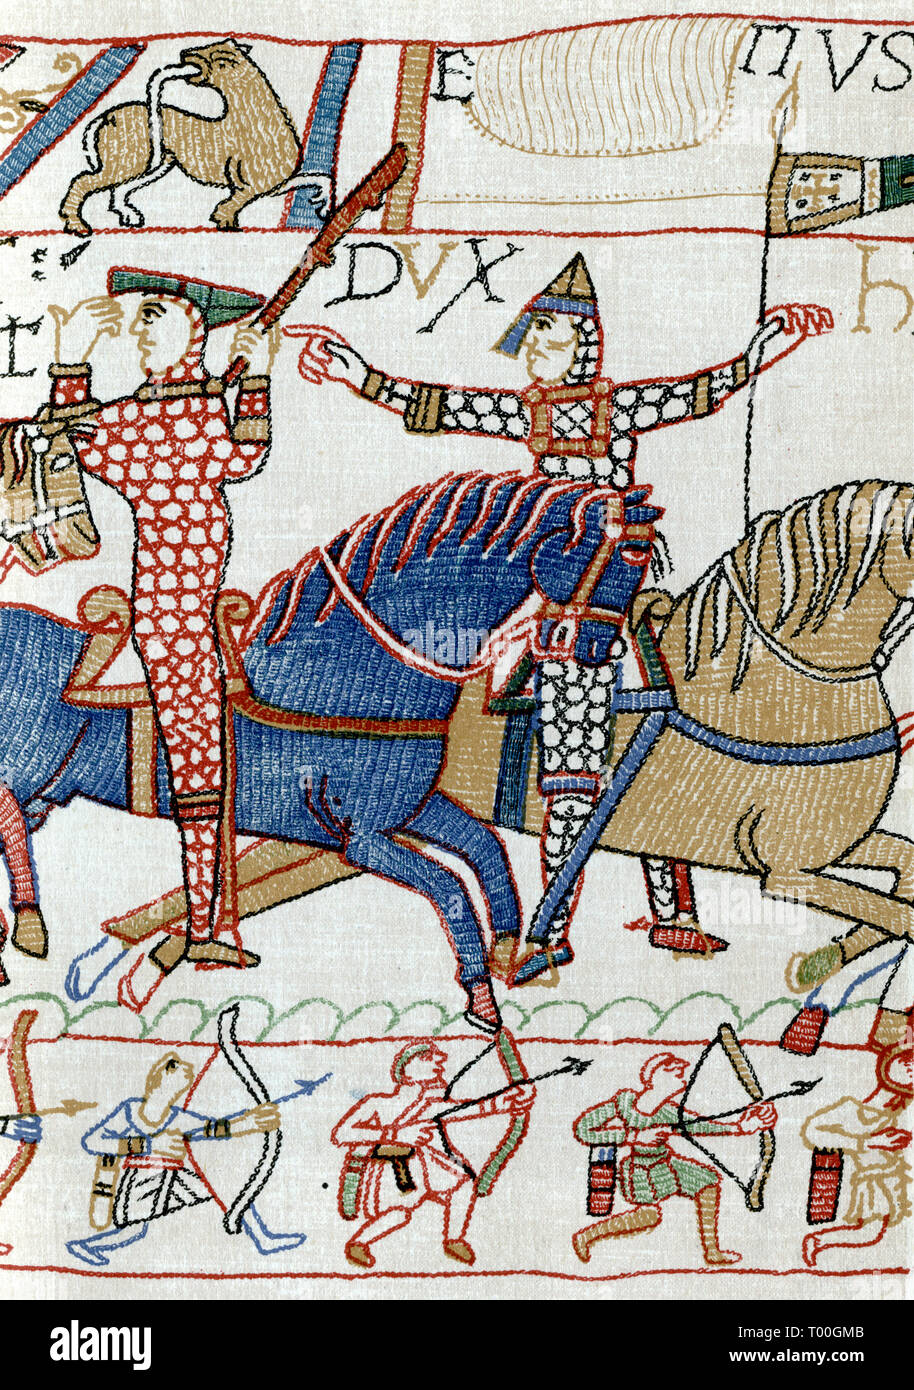 Guillaume I (c1028-1087), peut-être avec Eustache II, comte de Boulogne (c1015-c1087), pendant la bataille de Hastings, XIe siècle. Un détail de la Tapisserie de Bayeux. La Tapisserie de Bayeux (Tapisserie de Bayeux) dépeint les événements qui ont mené à la conquête normande de l'Angleterre concernant Guillaume, duc de Normandie, et Harold, comte de Wessex, plus tard roi d'Angleterre, et qui ont culminé dans la bataille de Hastings. Banque D'Images